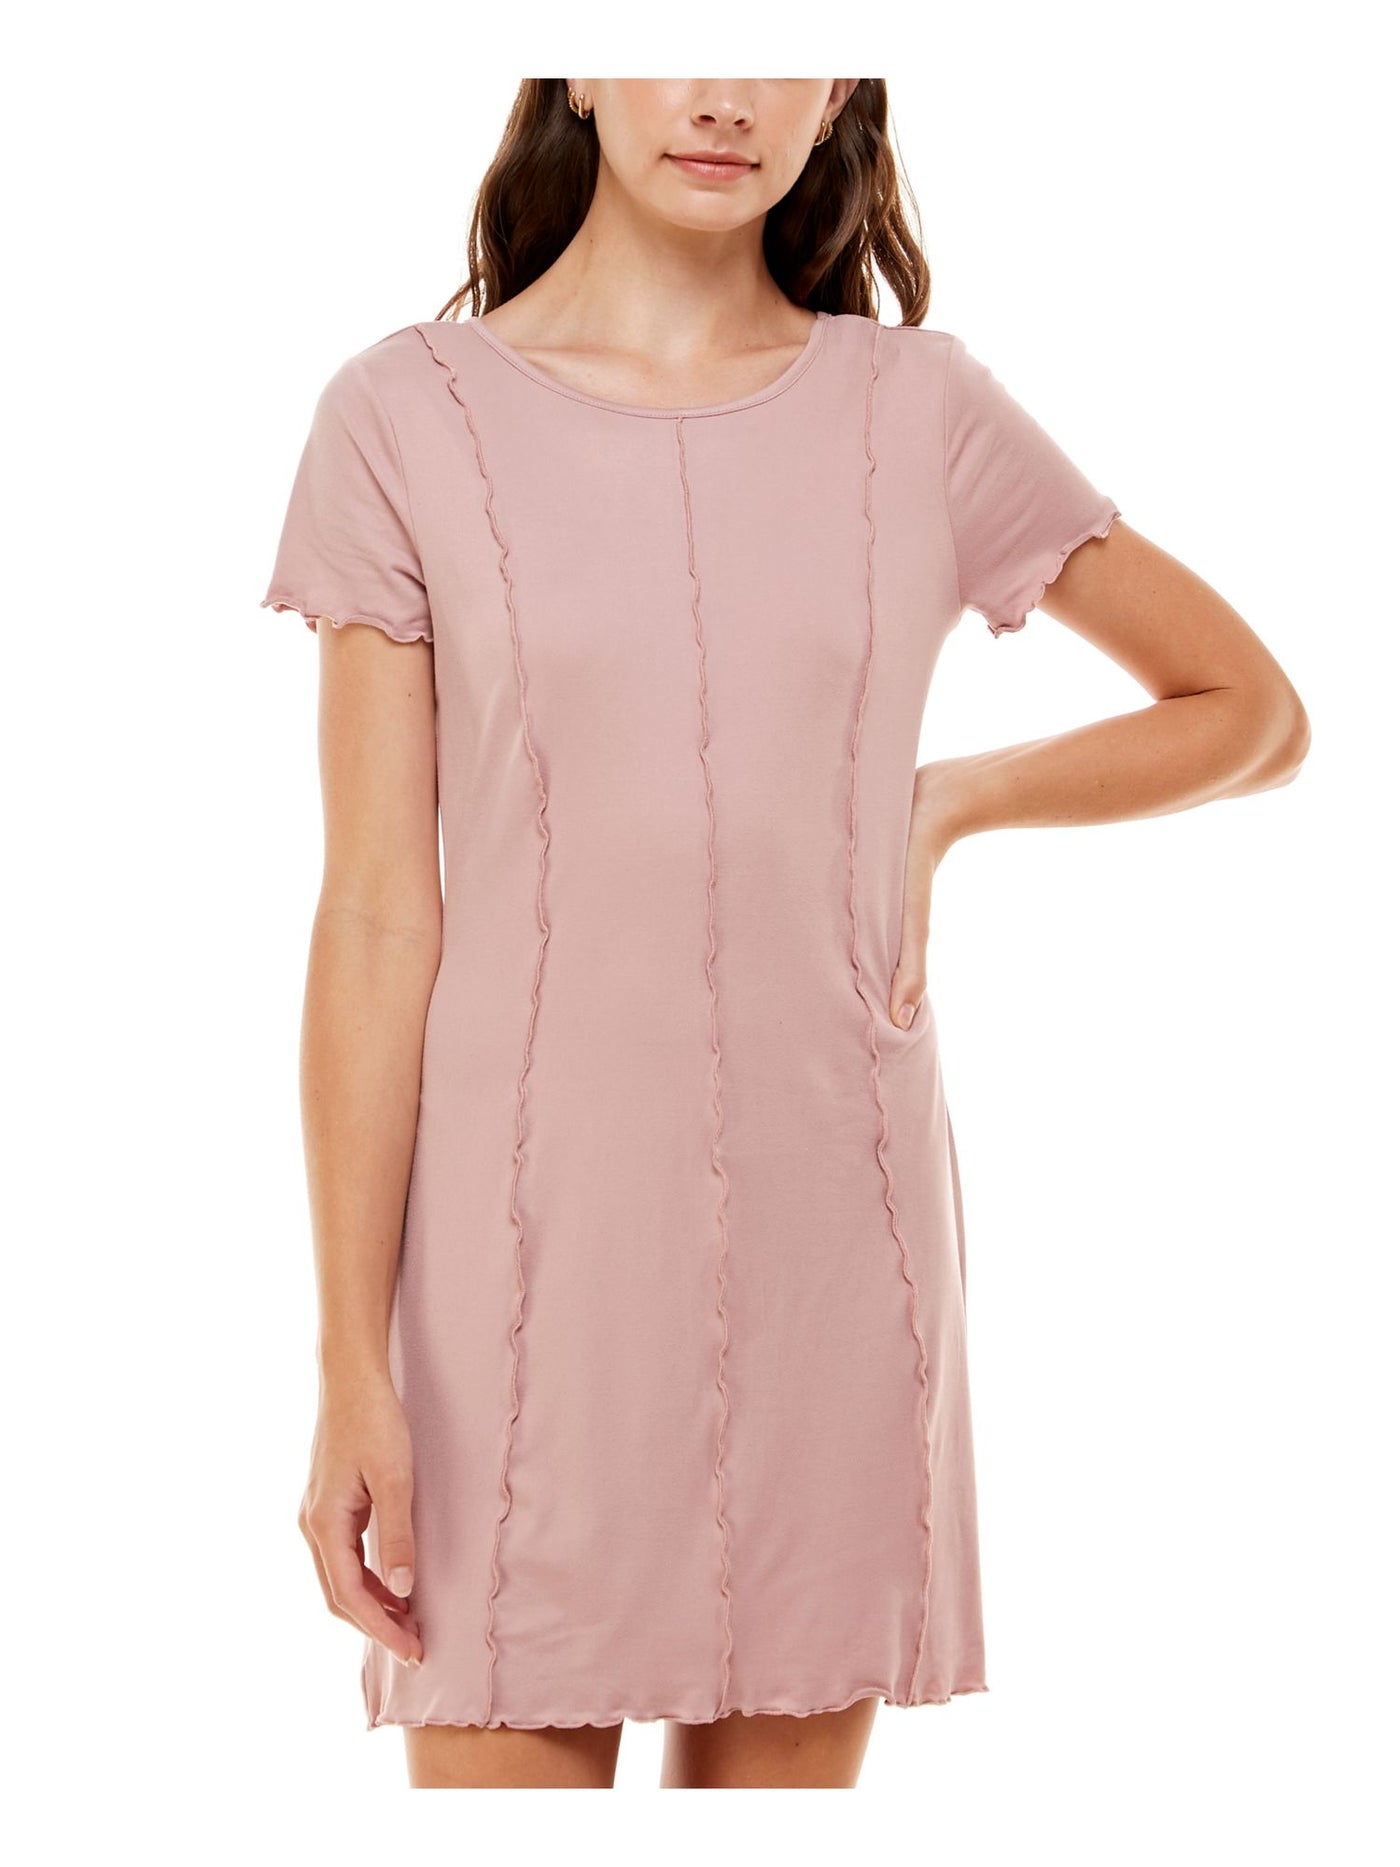 ULTRA FLIRT Womens Pink Stretch Short Sleeve Scoop Neck Short Shift Dress Juniors M